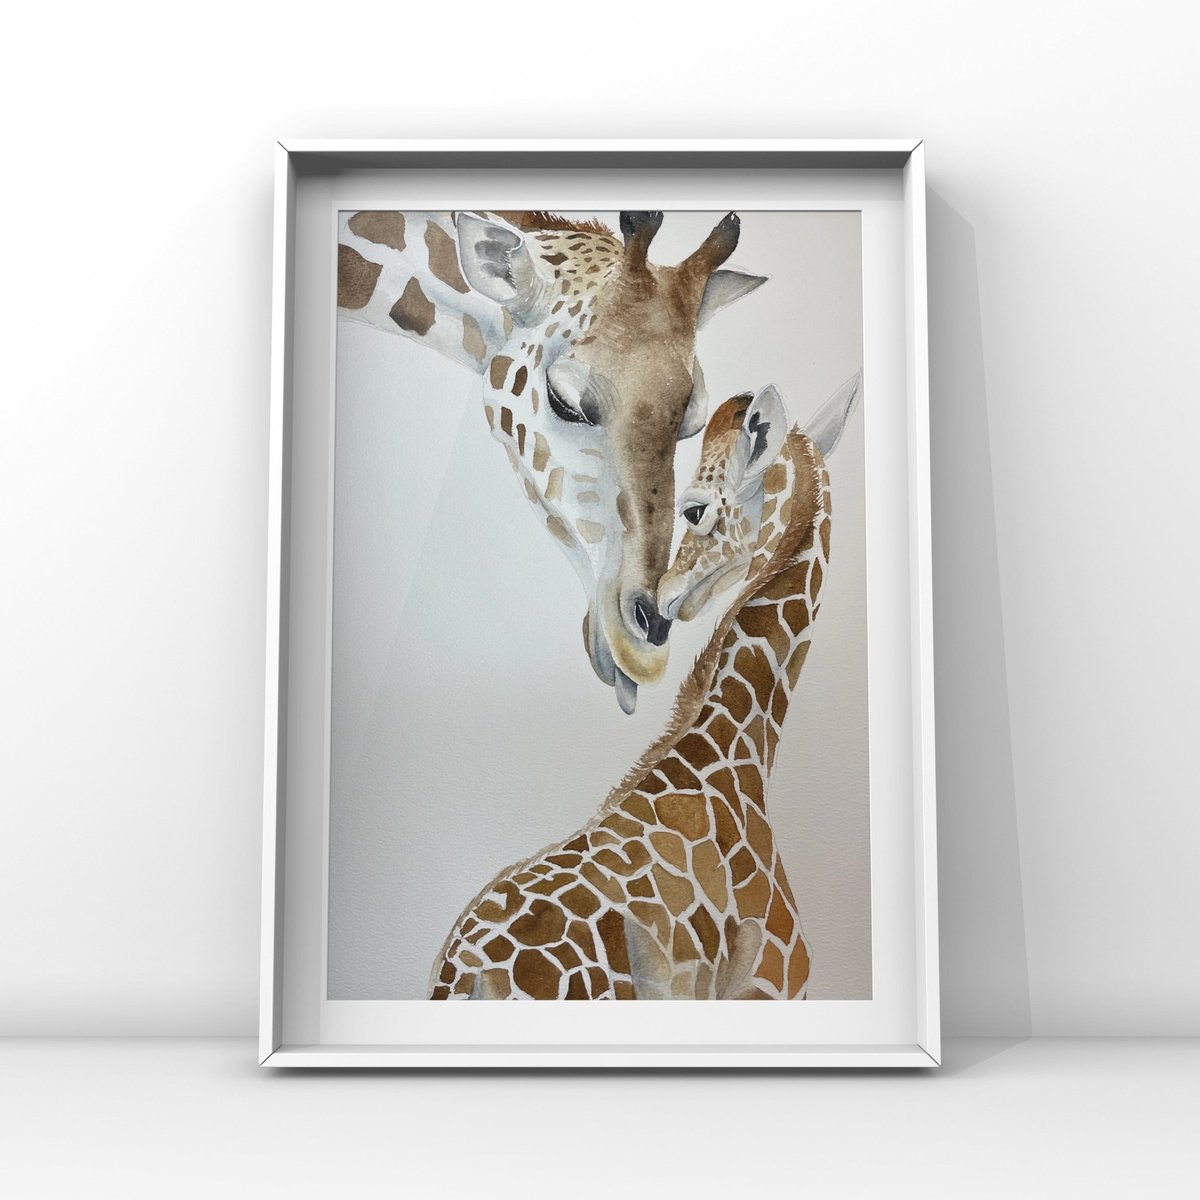 Giraffe kiss by Lucia Kasardova